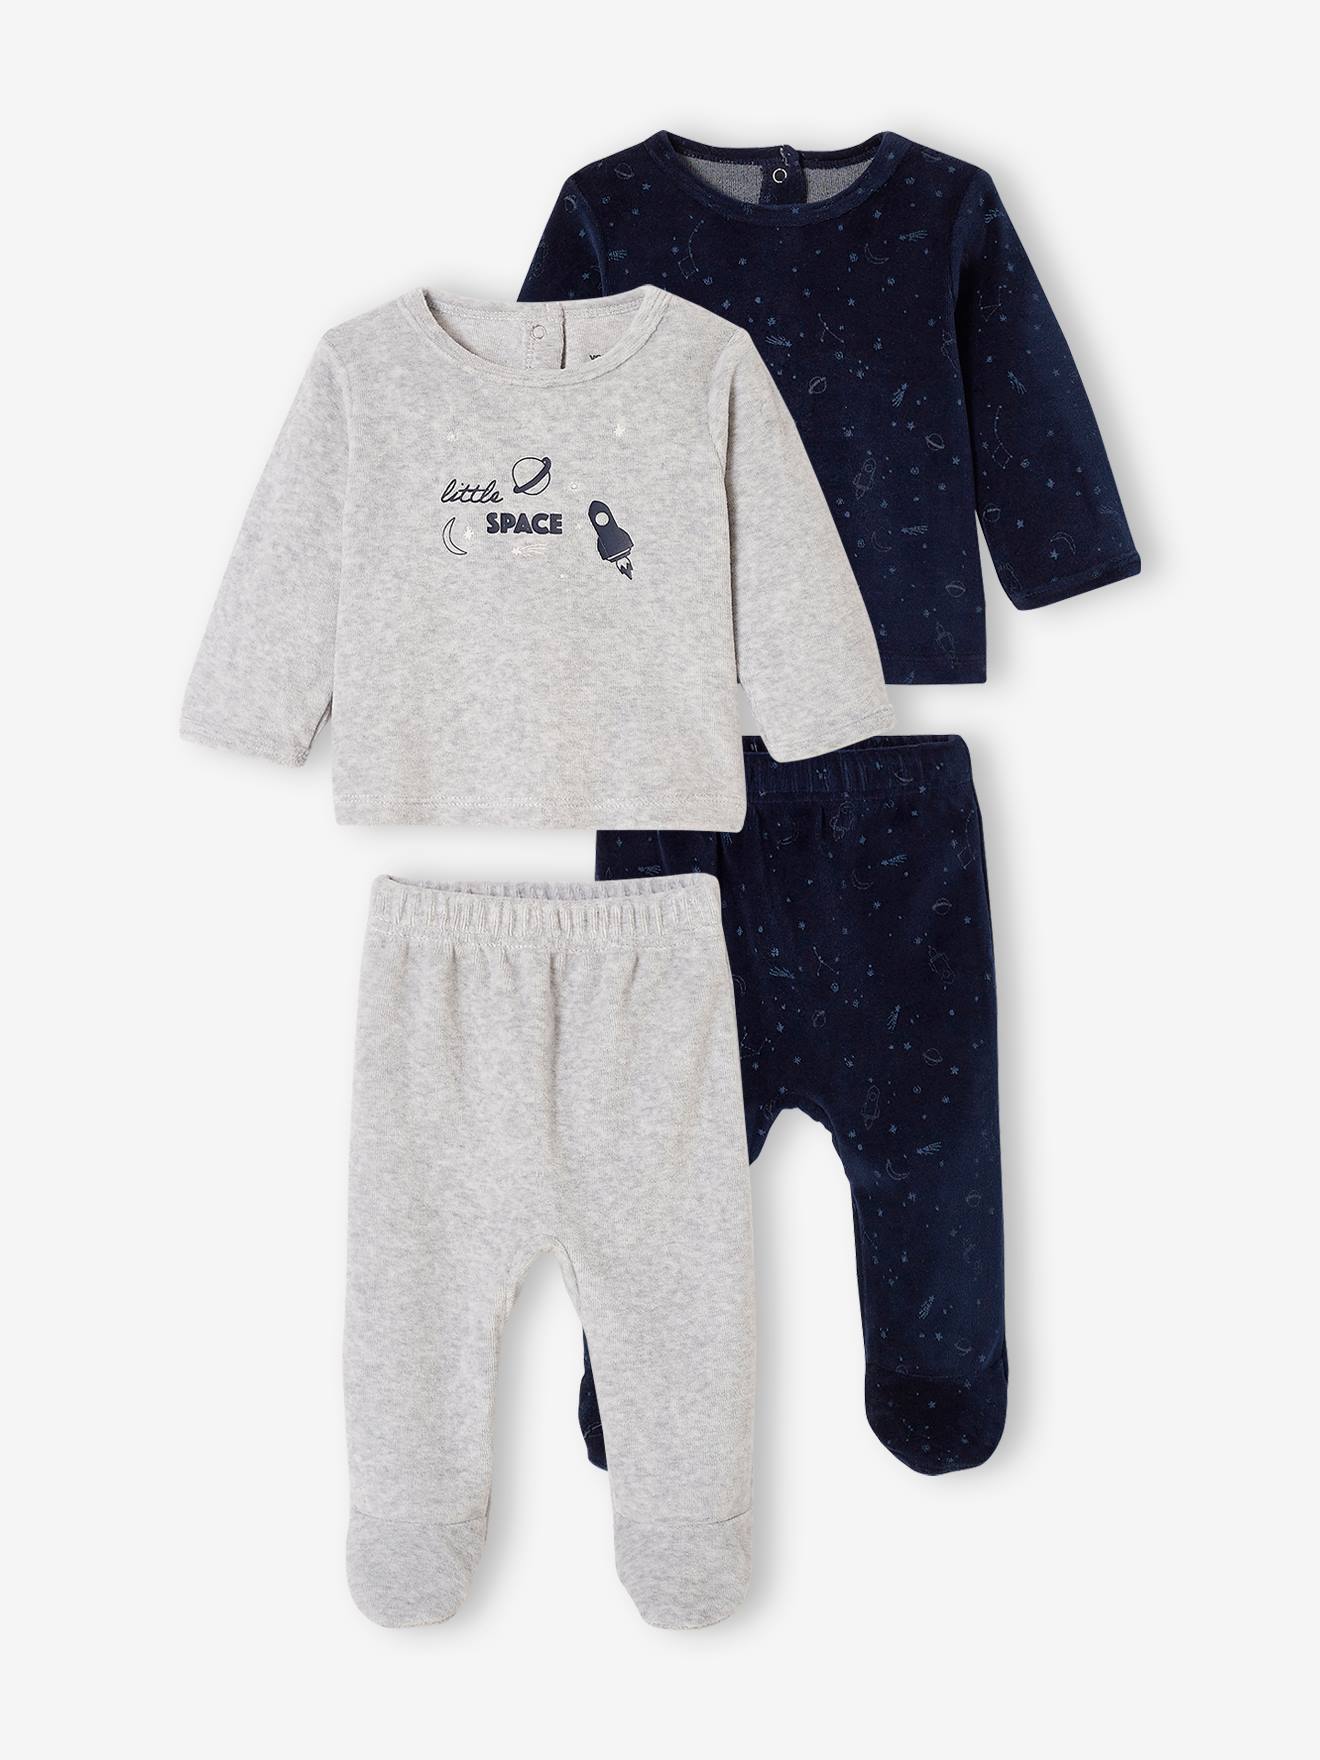 Neugeborenes Baby Karton Kigurumi Tier Schlafanzug Strampler warm Nachtwäsche FL 